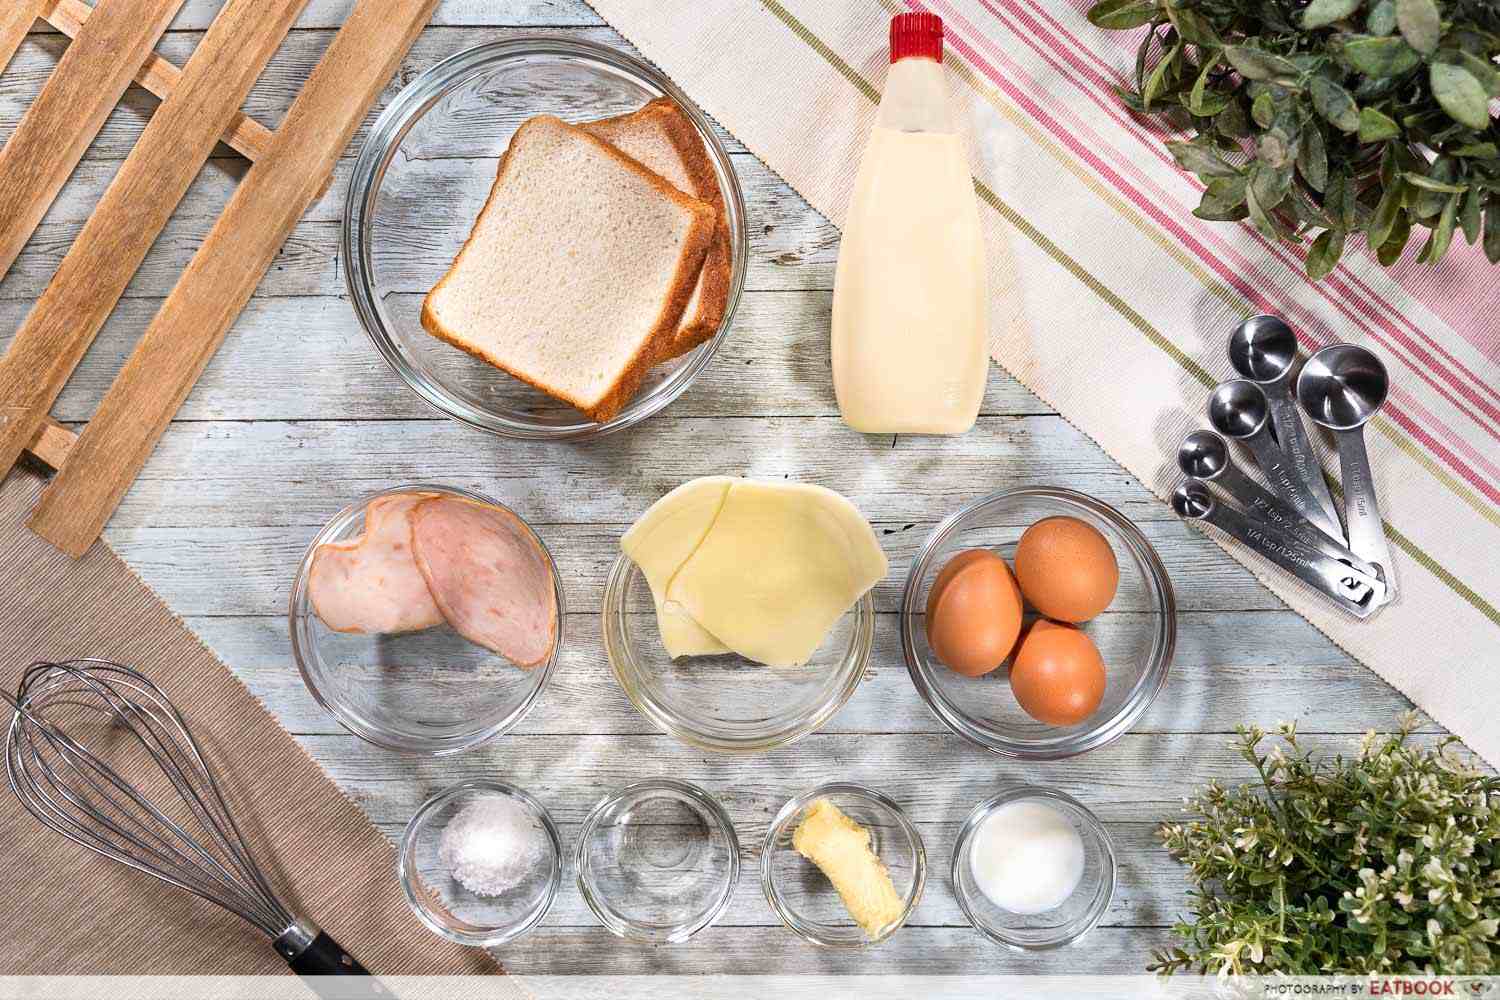 foodpanda egg drop sandwich ingredients